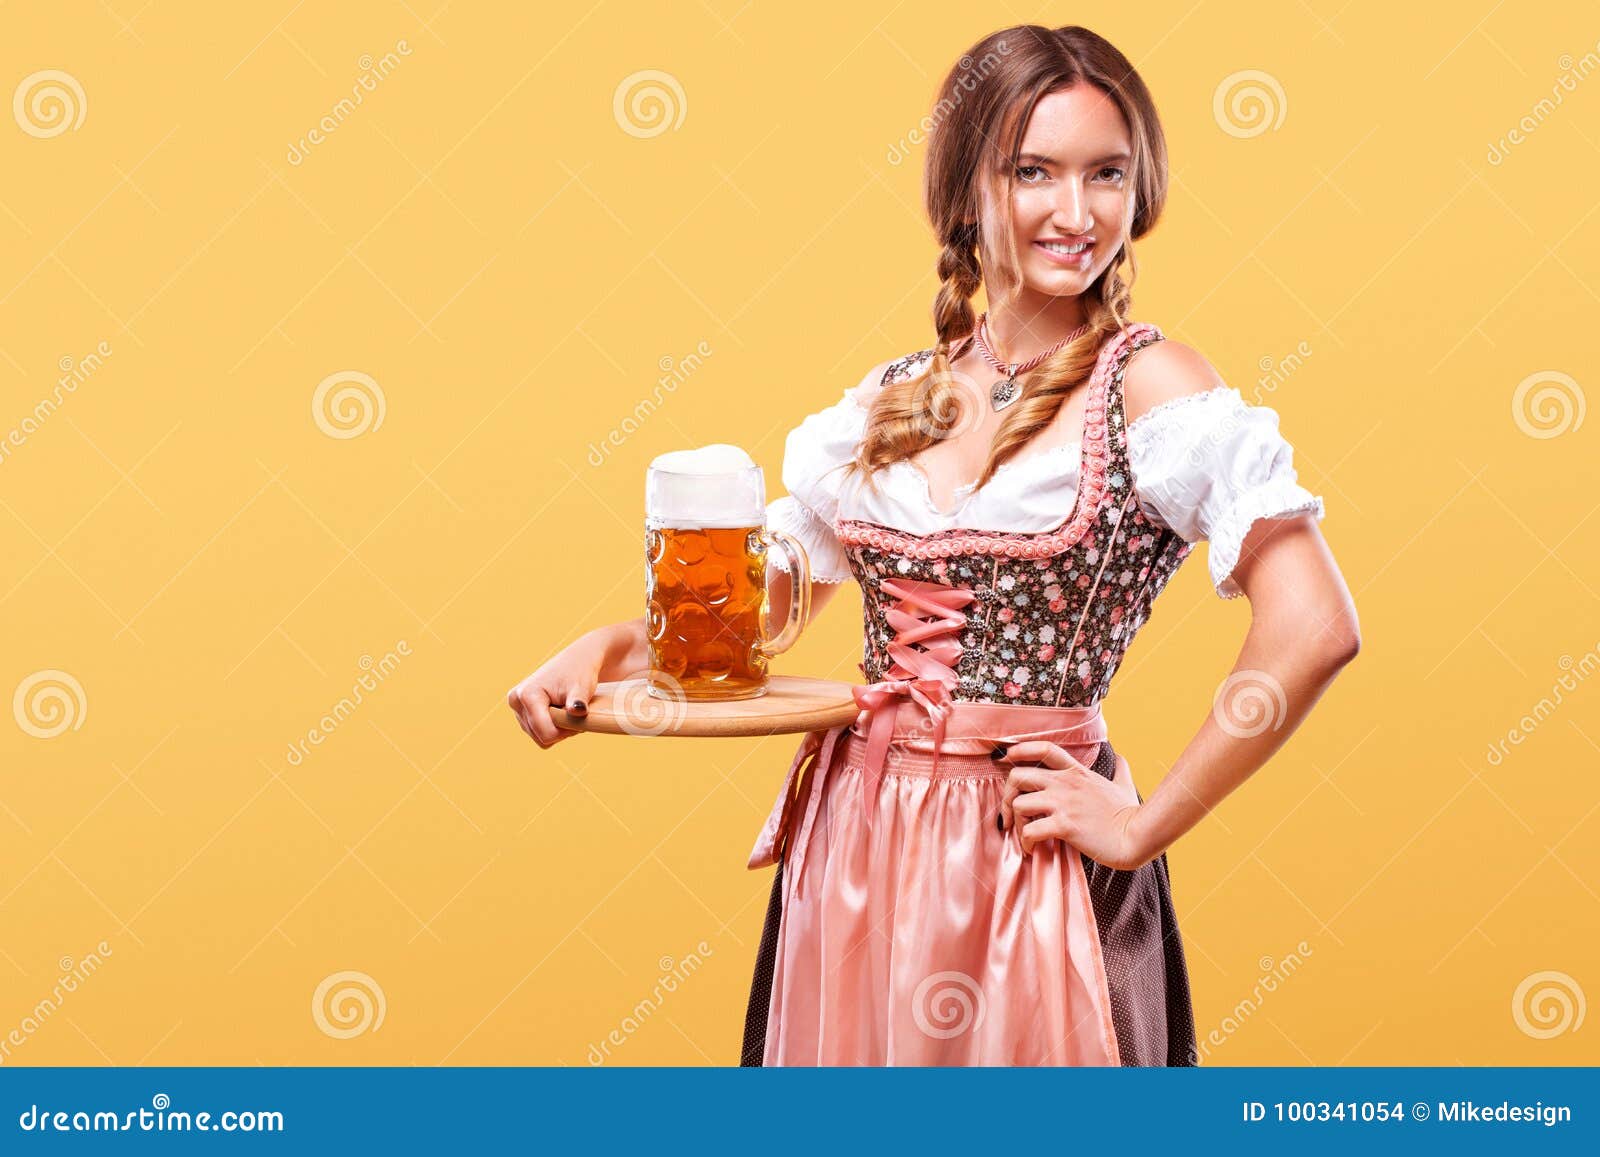 Muchacha atractiva joven de Oktoberfest - camarera, llevando un vestido bávaro tradicional, tazas de cerveza grandes de servicio. Retrato de medio cuerpo del blonde atractivo joven con el dirndl del color del pecho que lleva grande con la blusa blanca que sostiene la taza de cerveza en fondo anaranjado